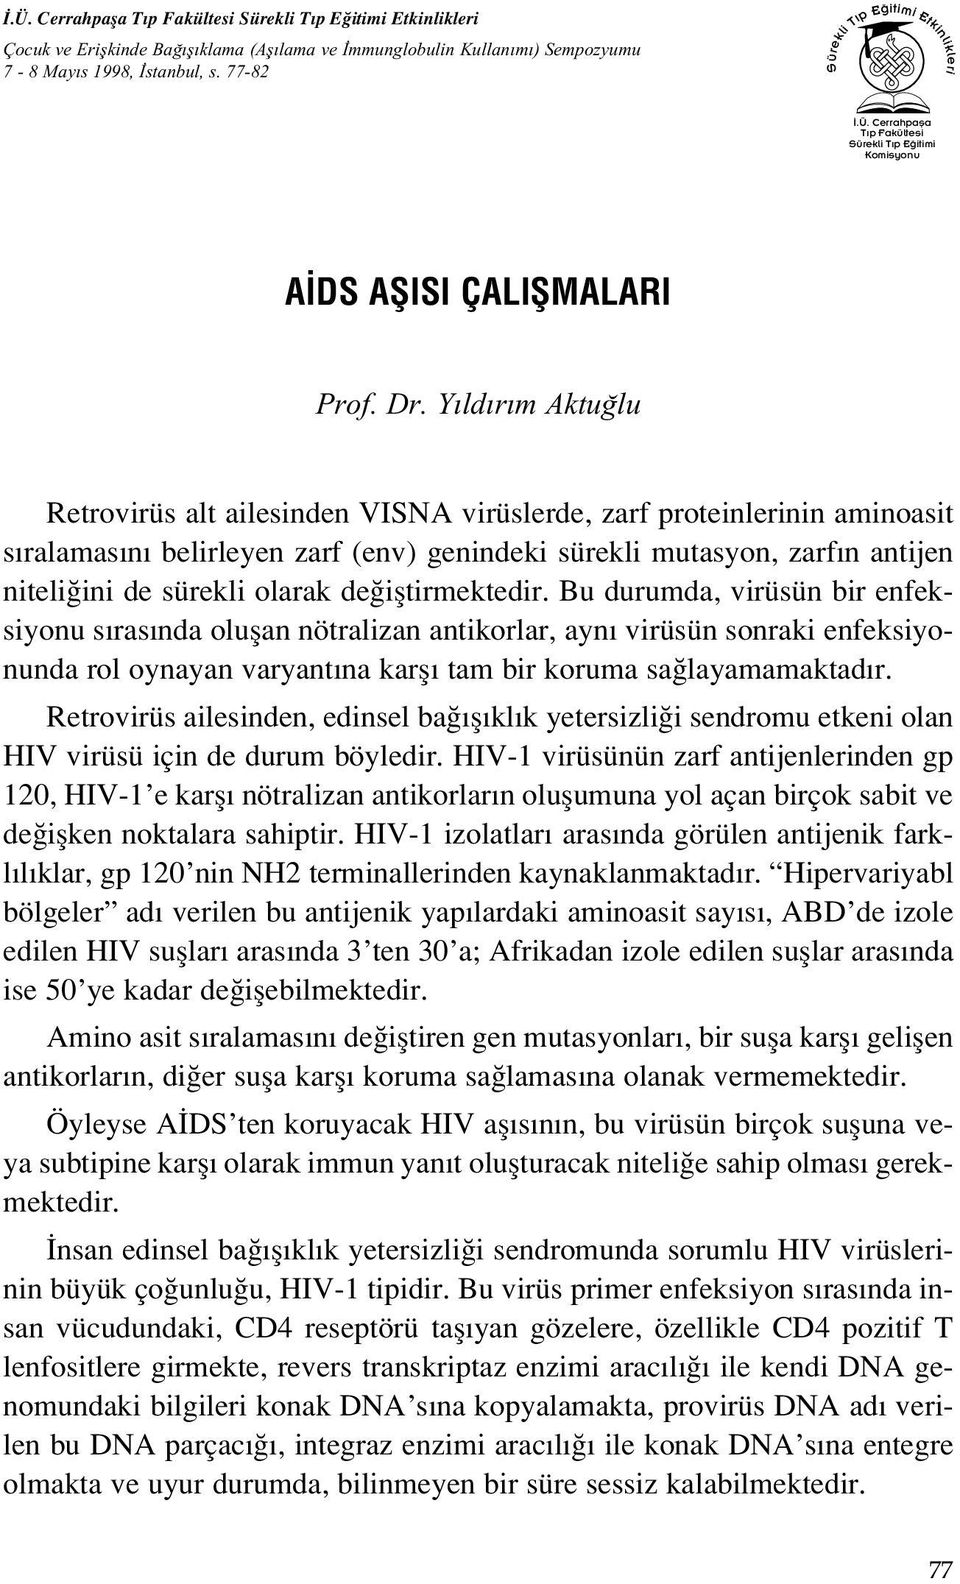 Y ld r m Aktu lu Retrovirüs alt ailesinden VISNA virüslerde, zarf proteinlerinin aminoasit s ralamas n belirleyen zarf (env) genindeki sürekli mutasyon, zarf n antijen niteli ini de sürekli olarak de